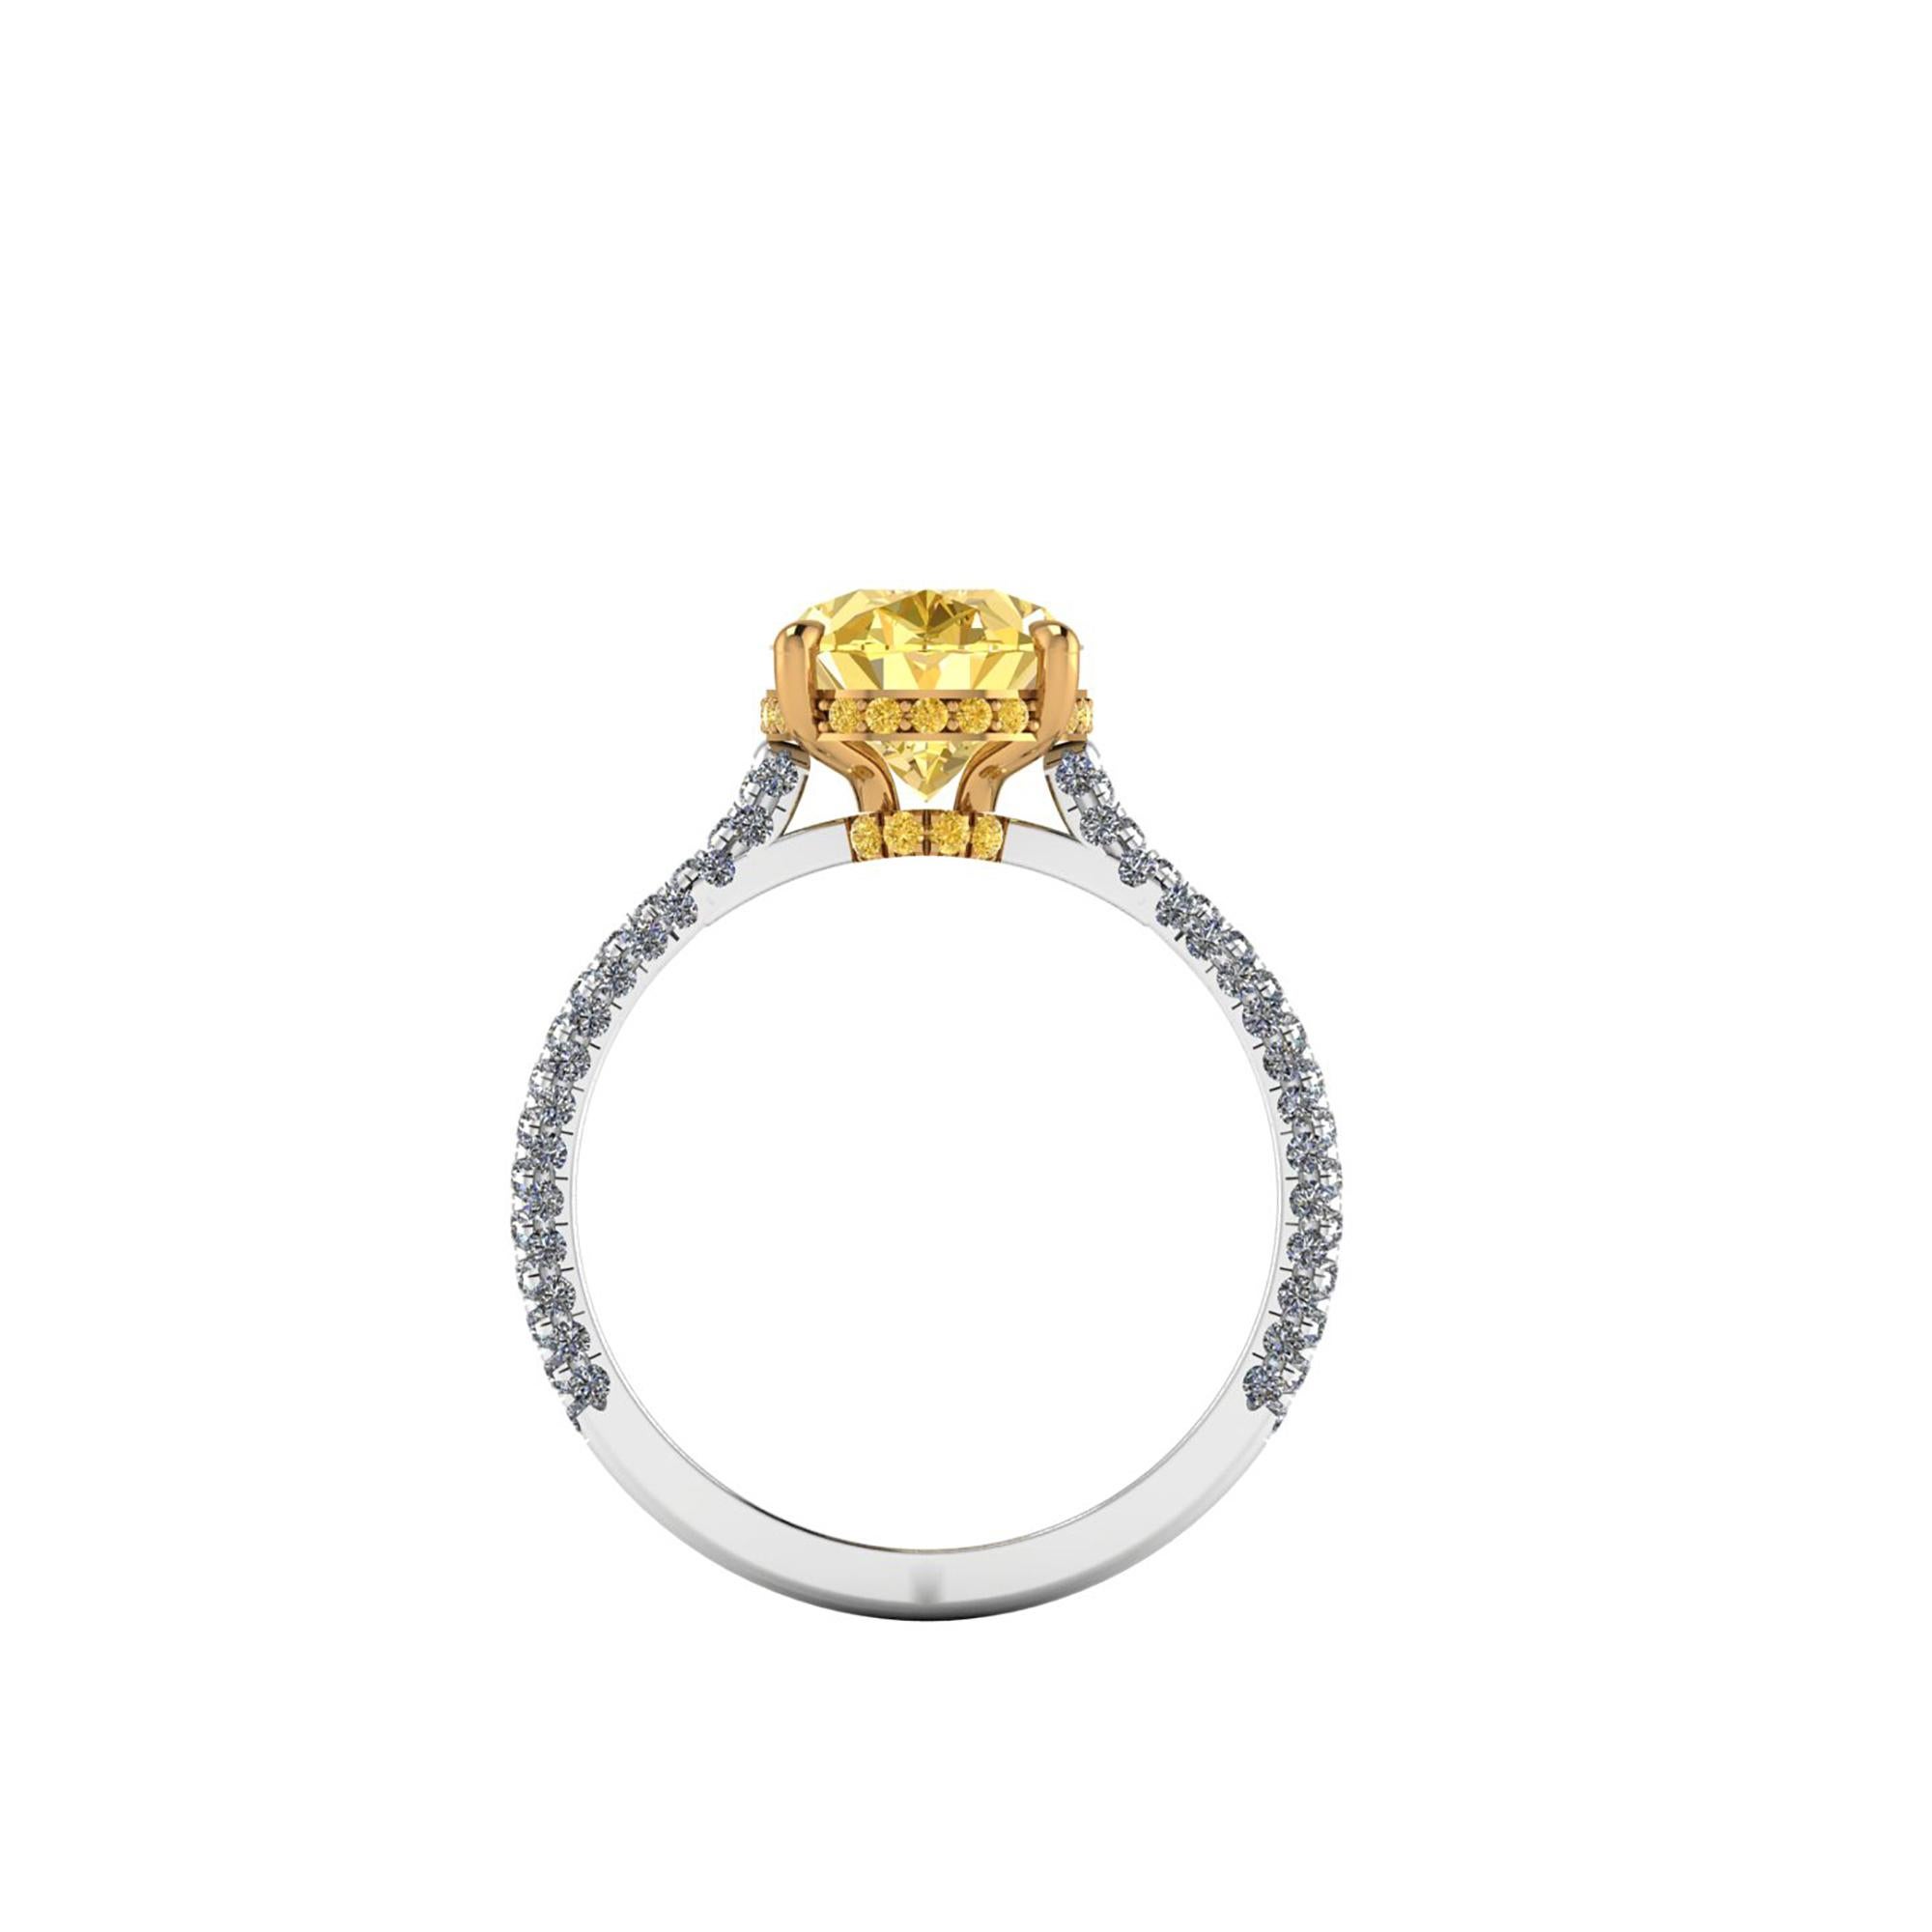 Ein sehr seltener Diamant in Farbe und Schönheit, GIA-zertifiziert 3,09 Karat Oval Fancy Deep Yellow Diamant mit No Fluorescence, eine seltene und wertvolle Diamanten, auf einem Platin 950 und 18k Gelbgold Ring, entworfen und handgefertigt in New